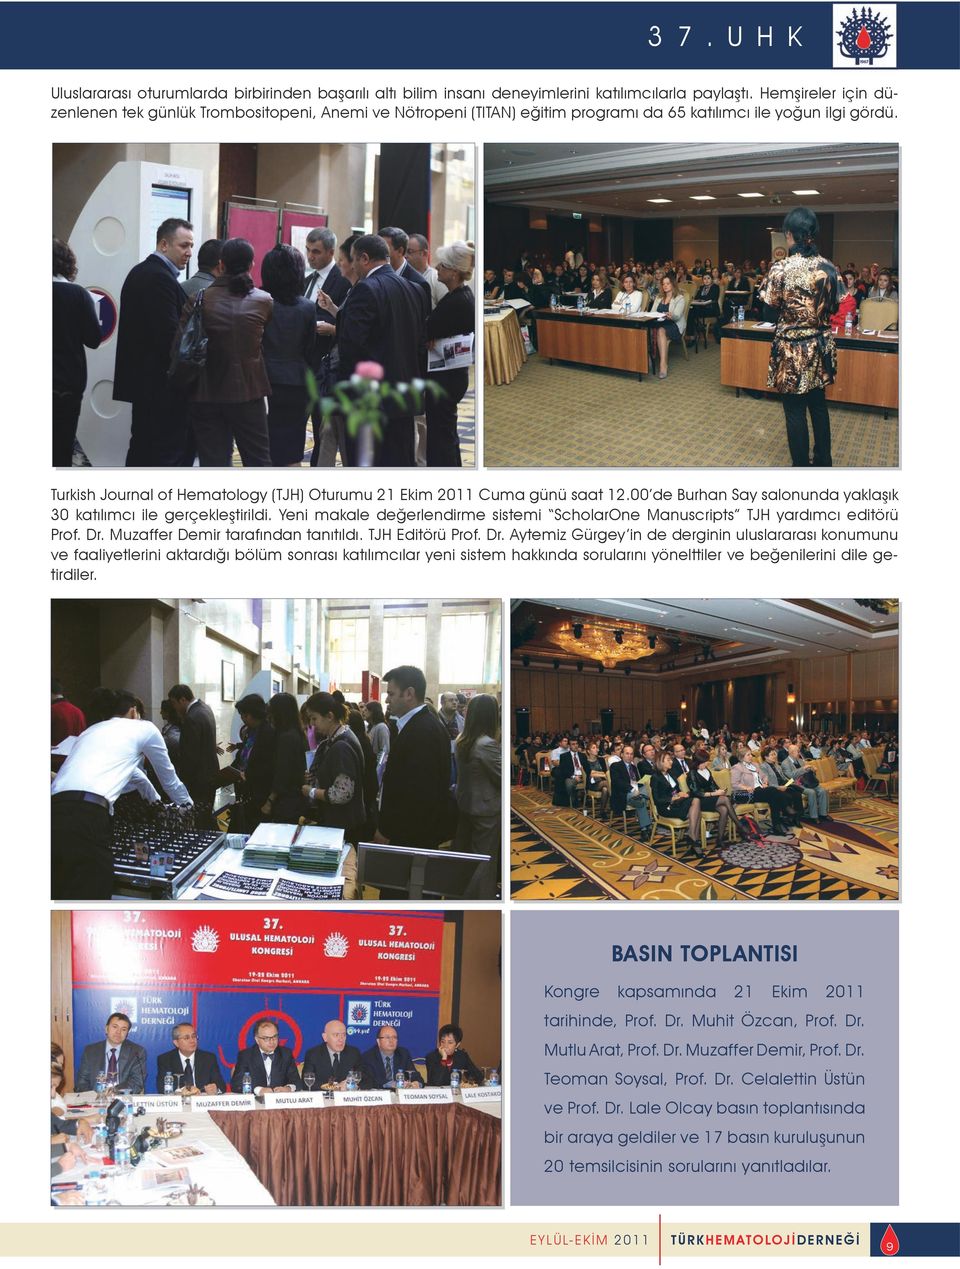 Turkish Journal of Hematology (TJH) Oturumu 21 Ekim 2011 Cuma günü saat 12.00 de Burhan Say salonunda yaklaşık 30 katılımcı ile gerçekleştirildi.